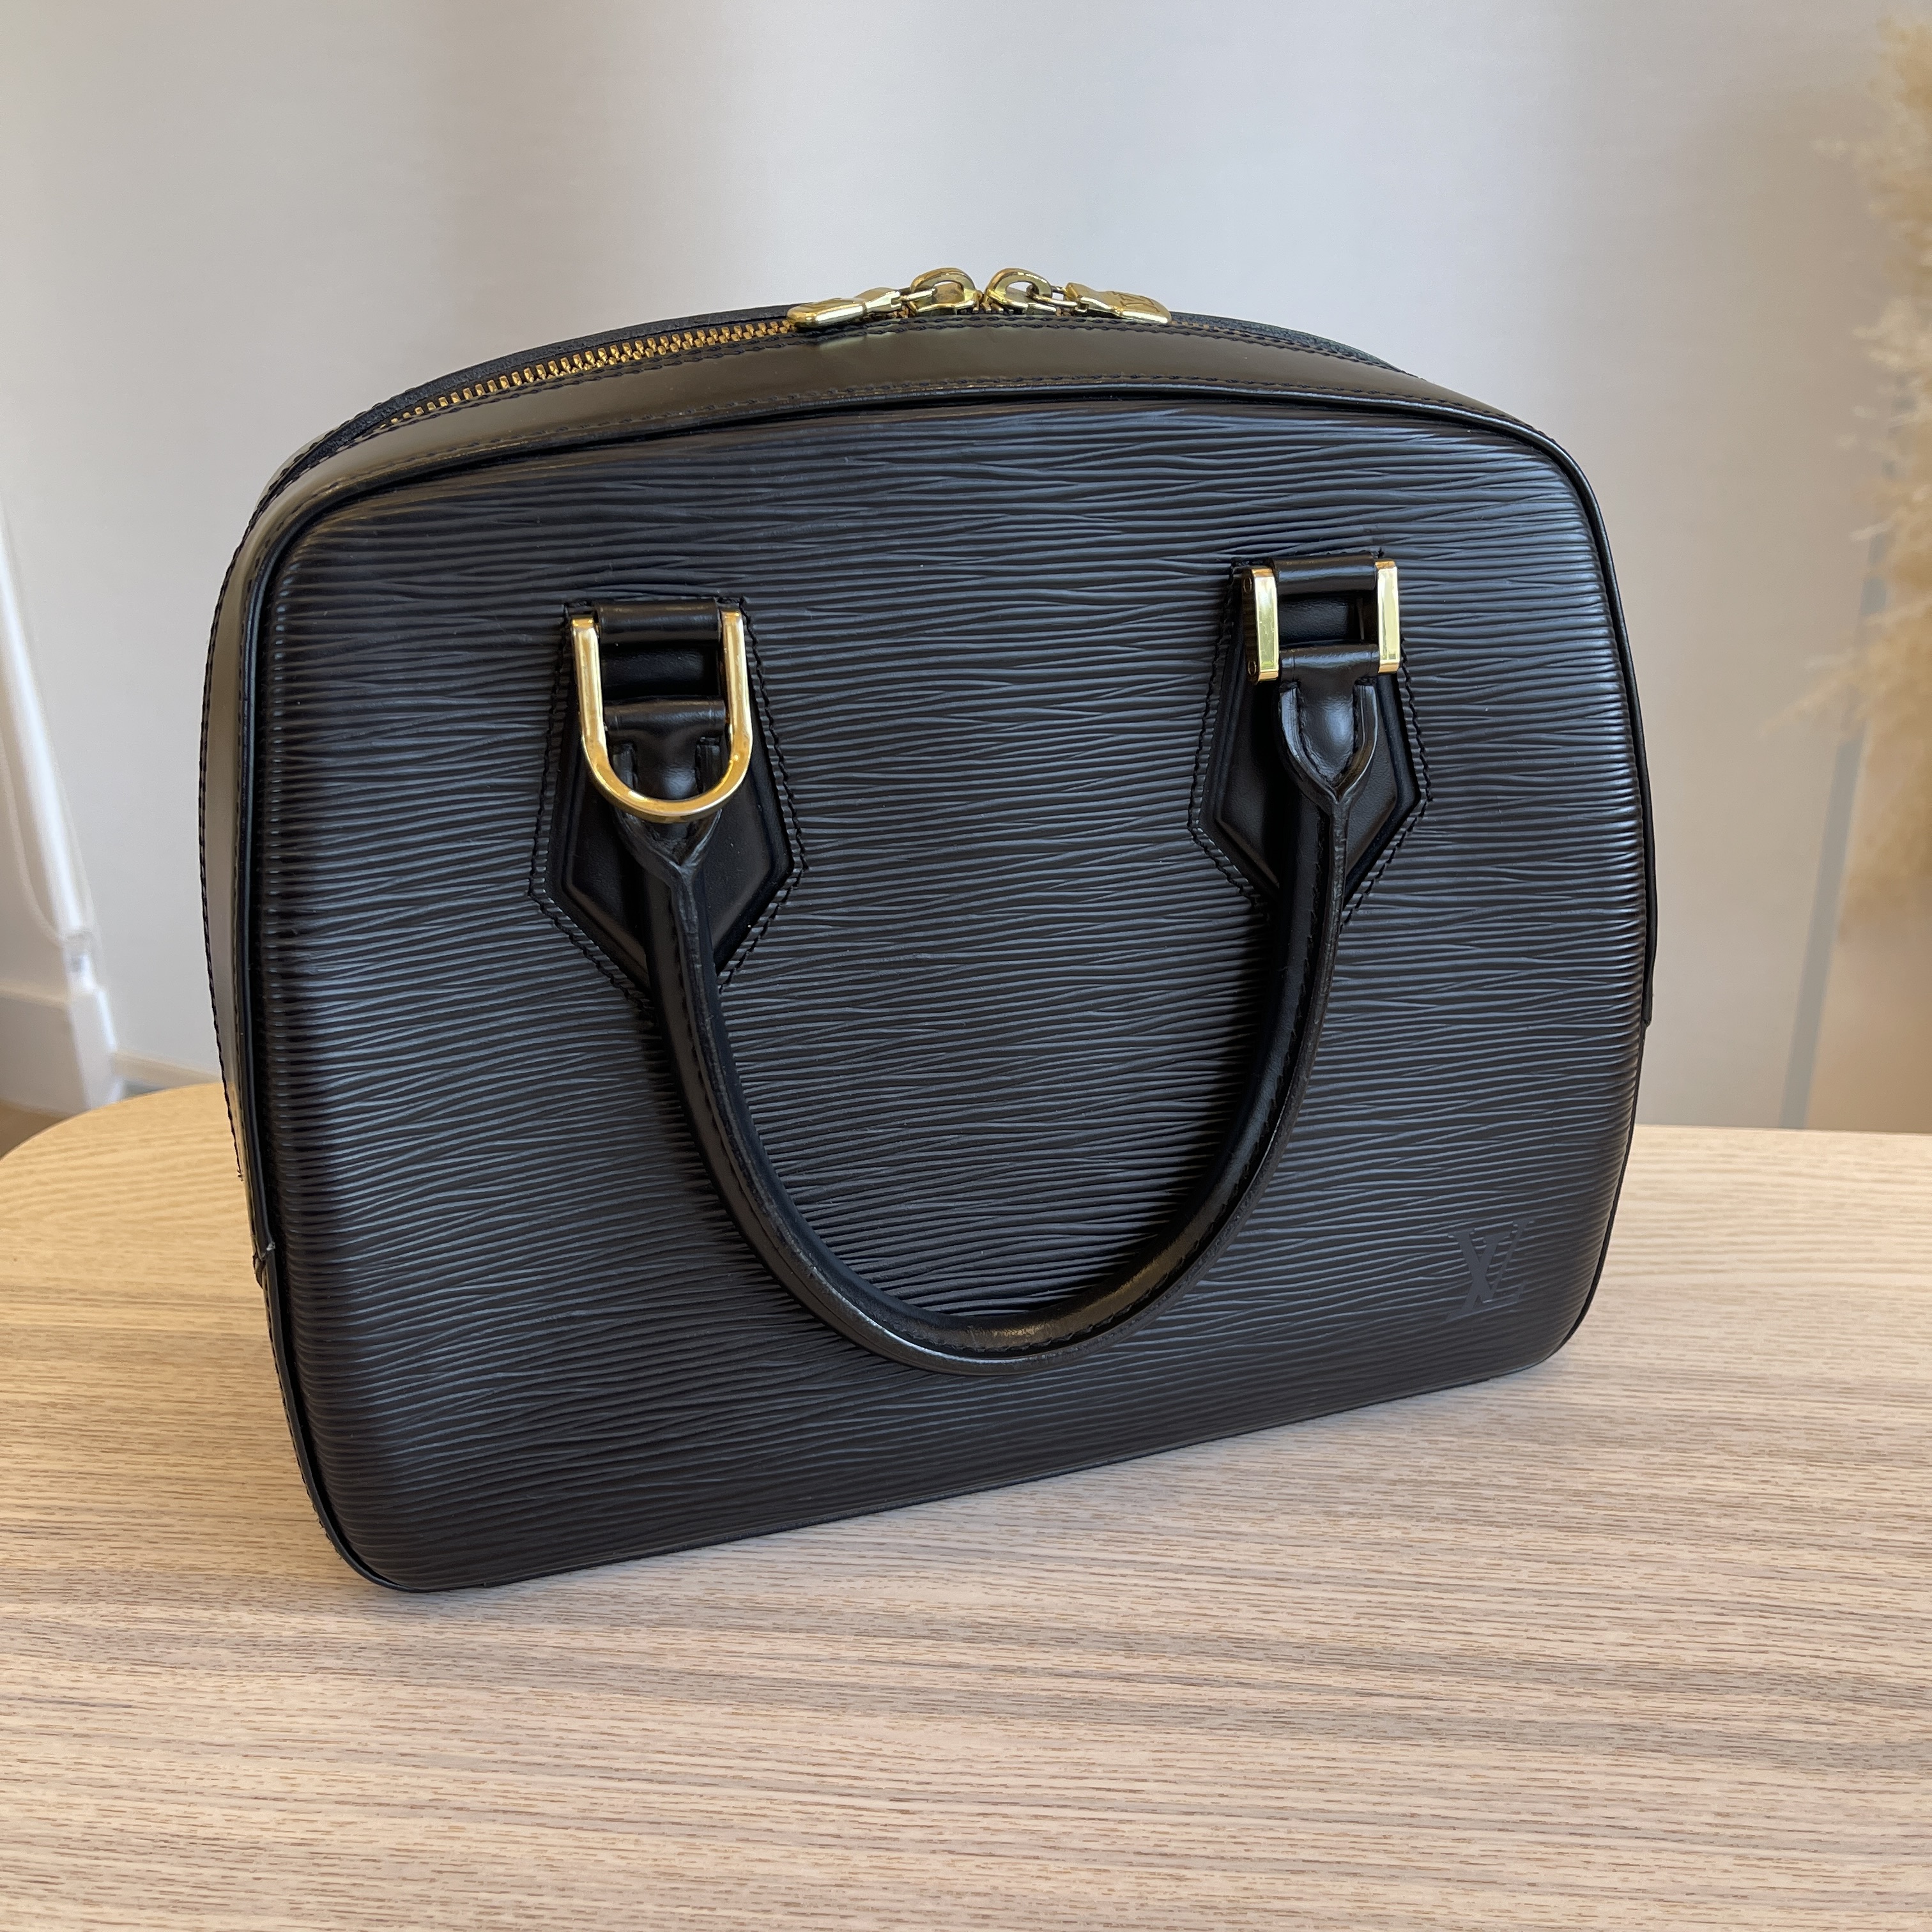 Authentic Louis Vuitton Sablon Epi Handbag